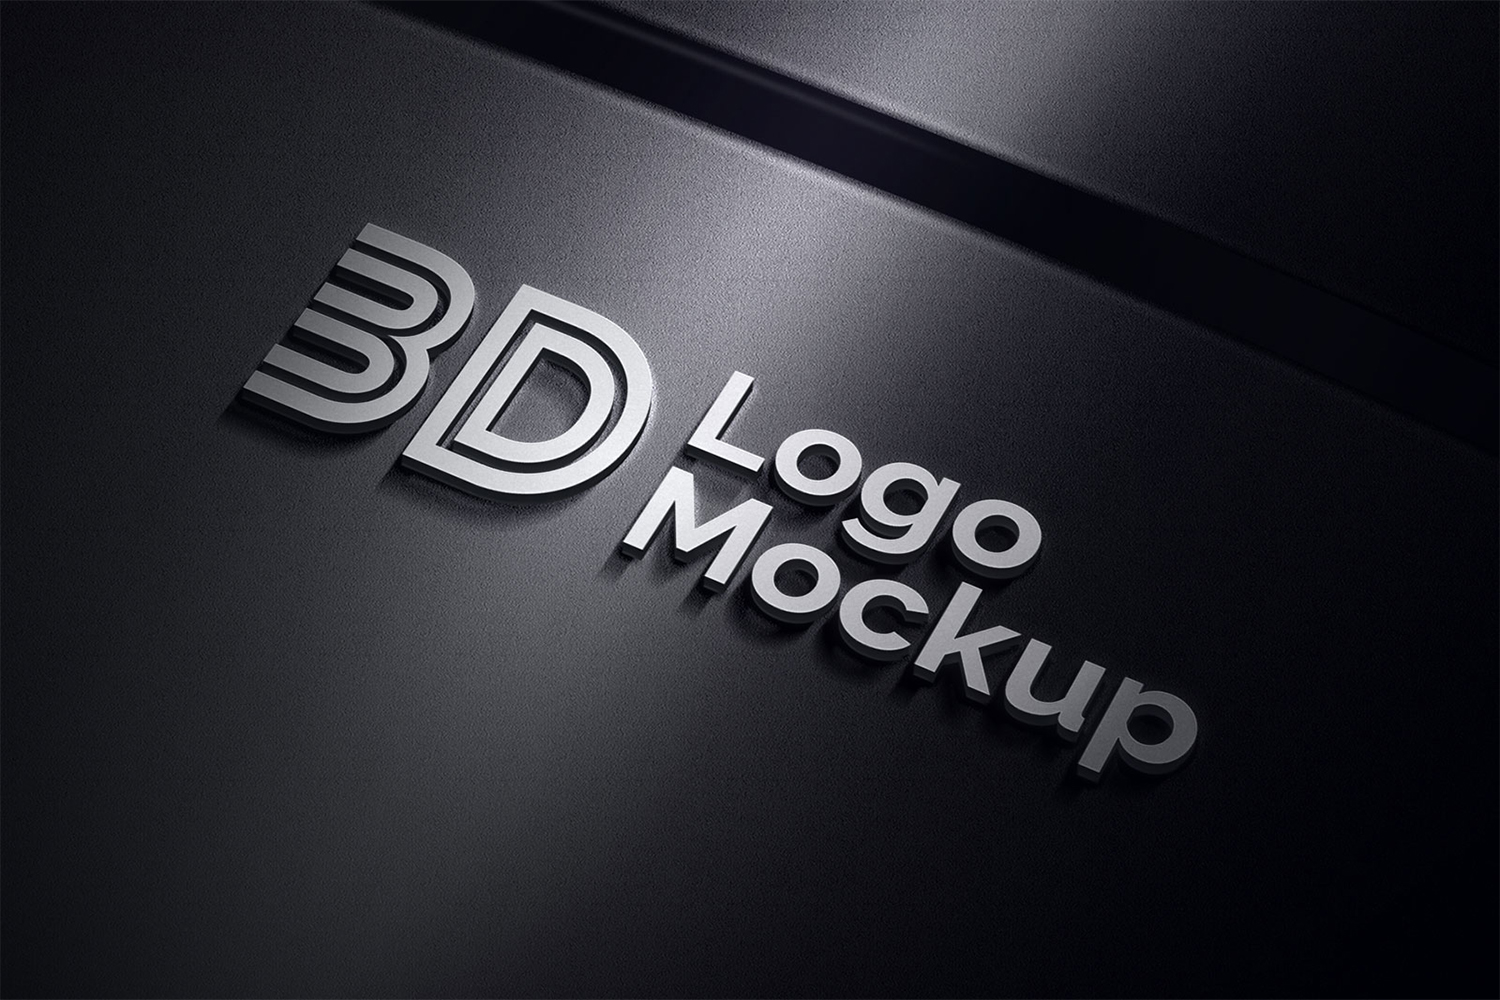 Premium 3D logo Mockup PSD Free Download (2)